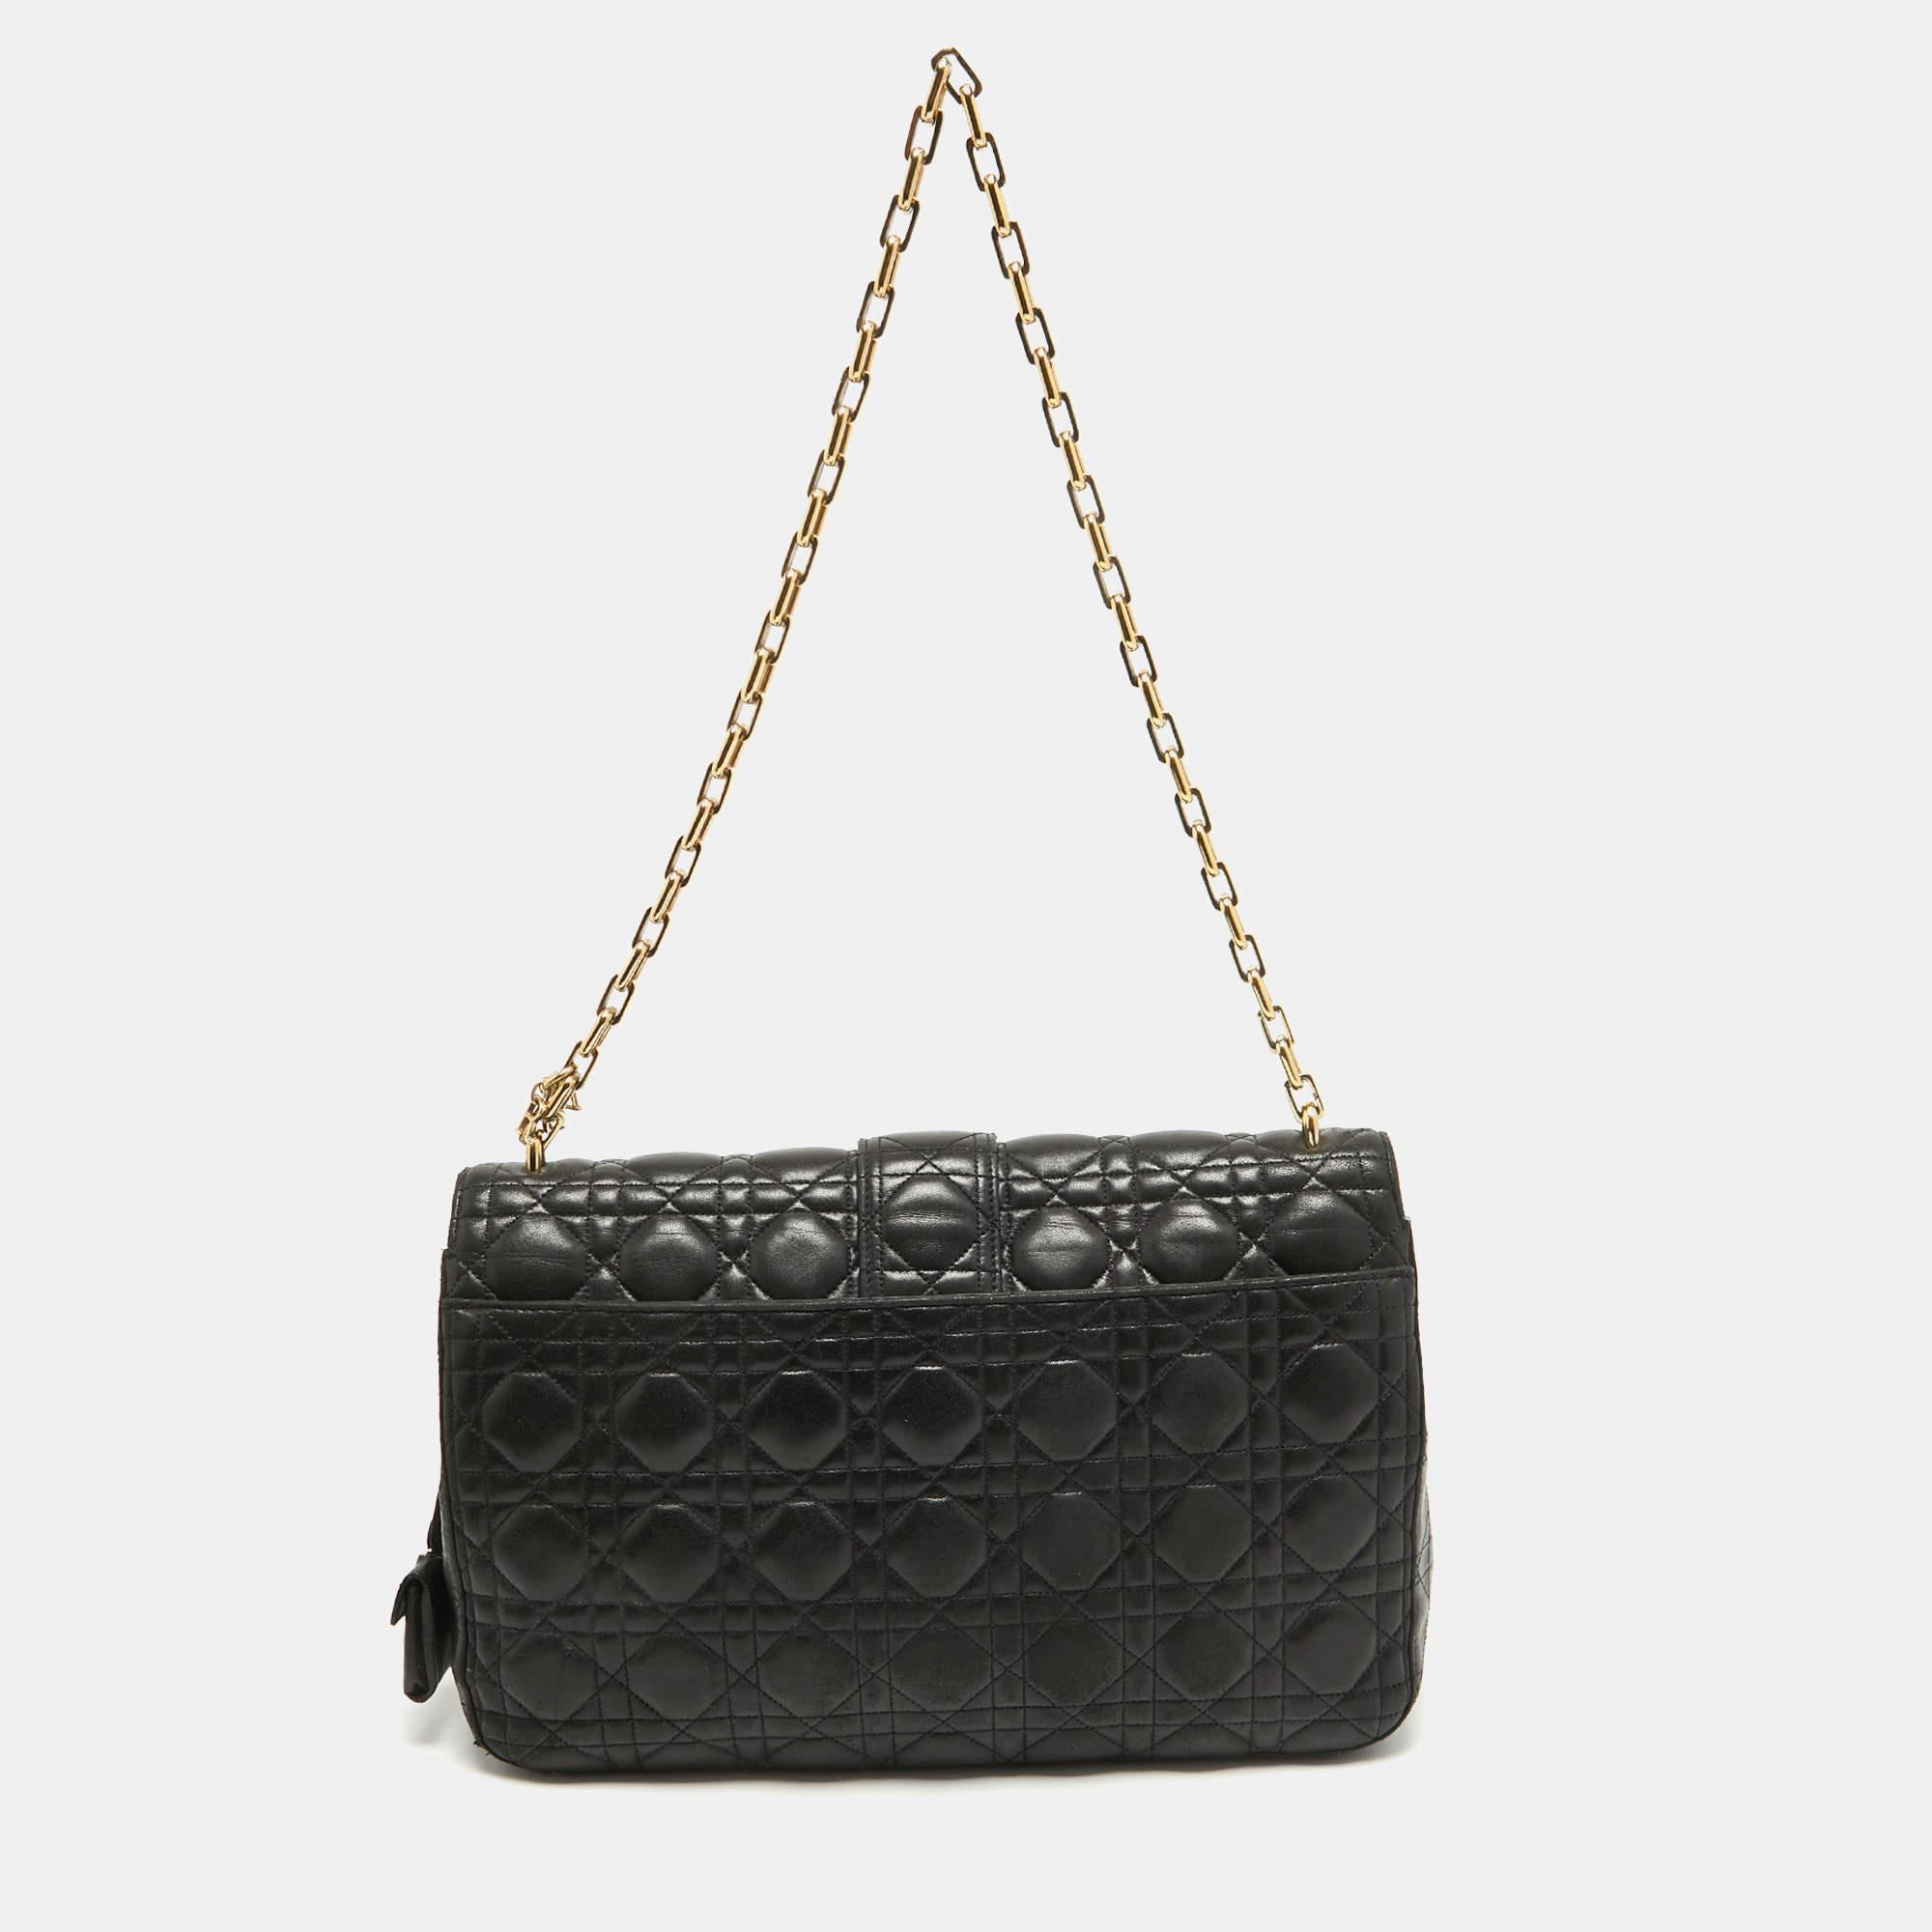 Ce sac Miss Dior de Dior, avec son design luxueux, sera un favori. Confectionné en cuir, il est orné de détails Cannage et de ferrures dorées. Ce sac est doté d'une chaîne d'épaule pour vous permettre de garder les mains libres.

Comprend : Clé